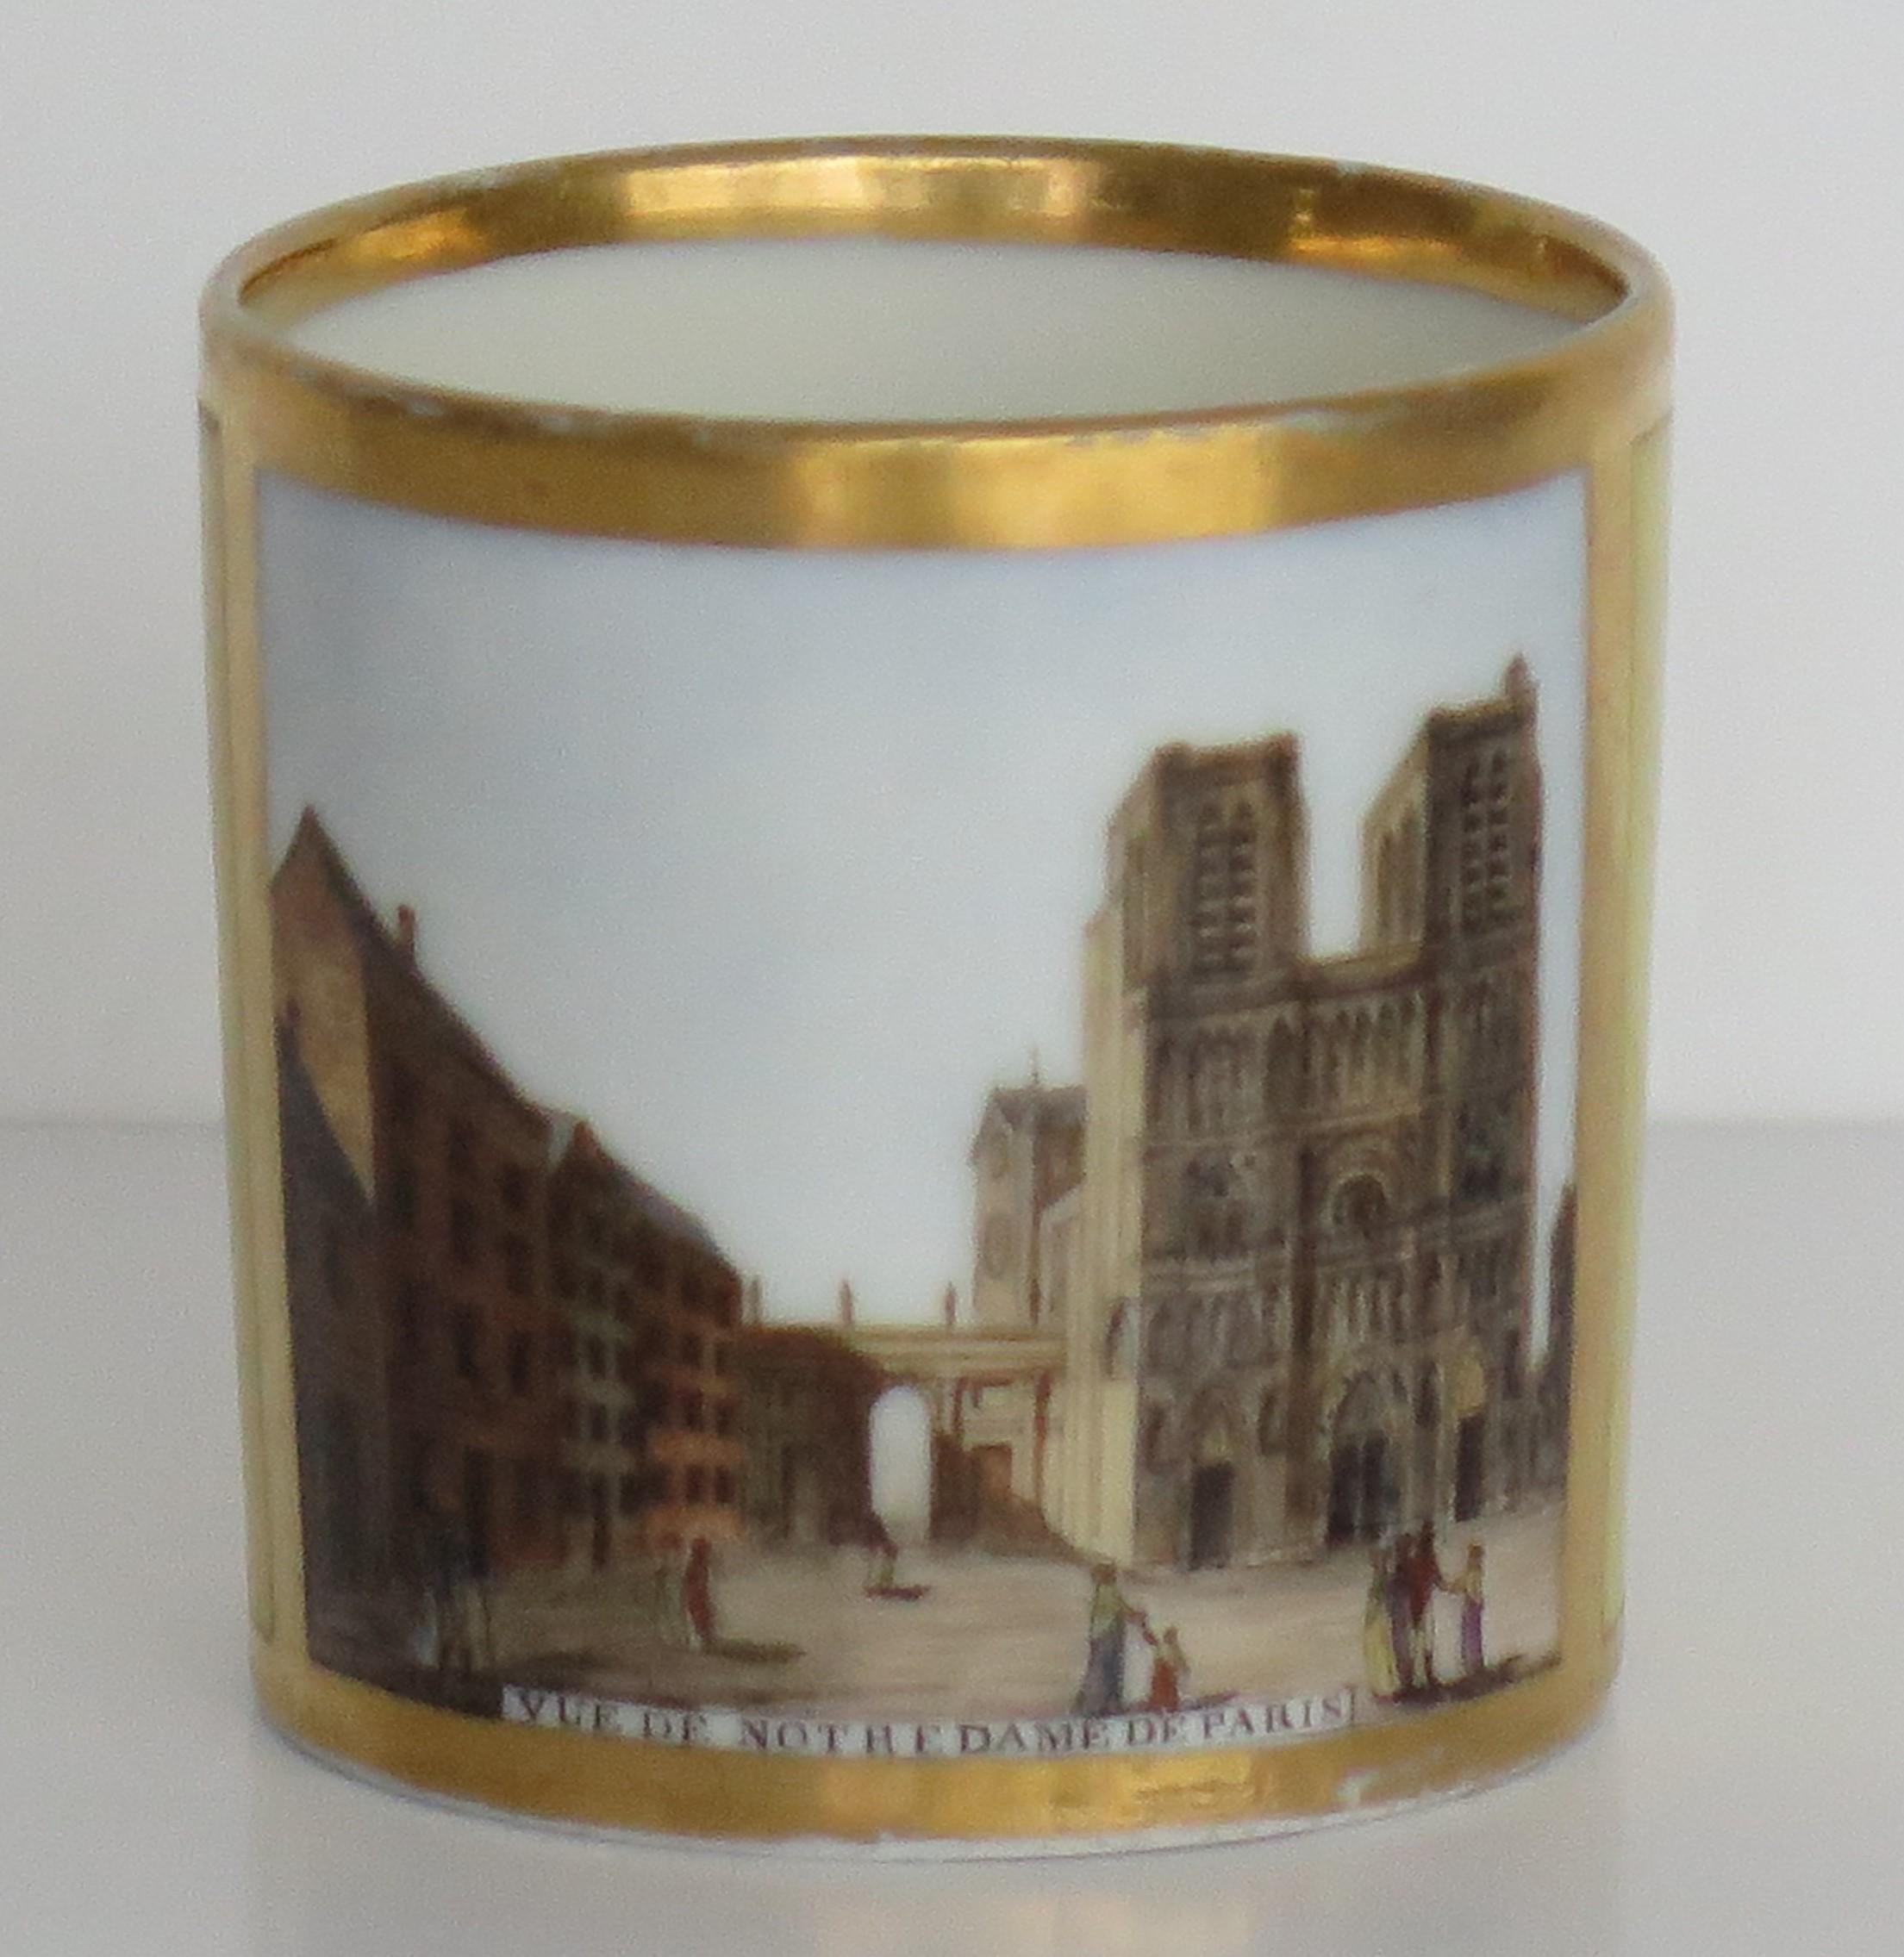 Il s'agit d'une très belle canette à café en porcelaine avec une scène peinte à la main de la cathédrale Notre-Dame, fabriquée à Paris, France, datant de la fin du 18e siècle, vers 1795.

La canette de café est largement cylindrique et s'effile